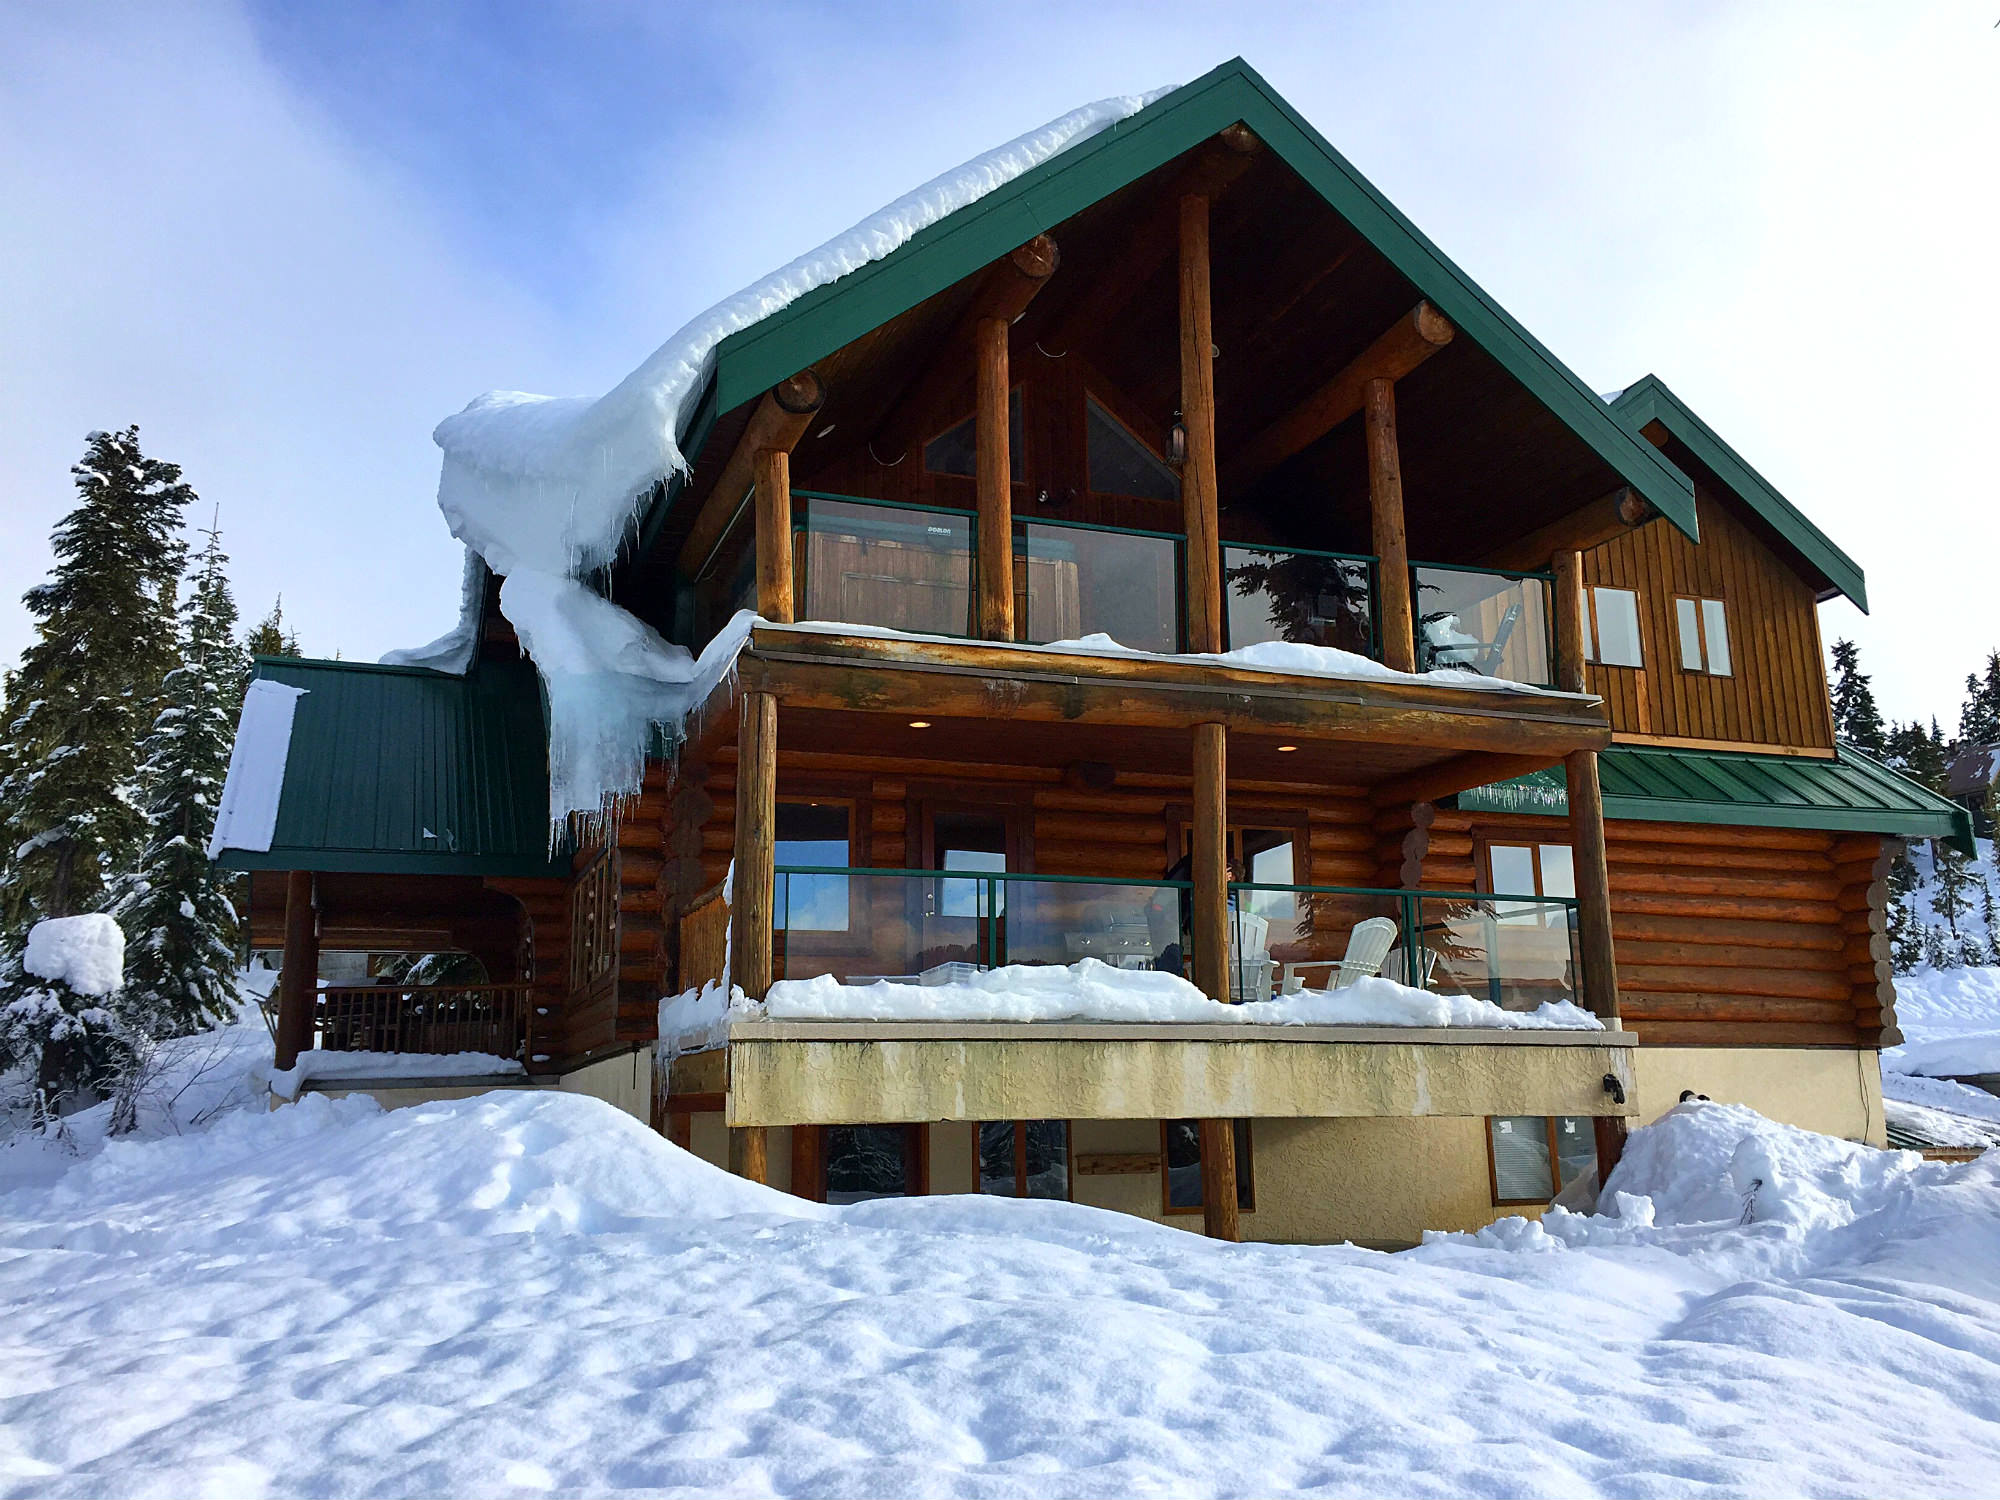 Mount Washington Accommodations, Wintergreen Lodge, where to stay on Mount Washington, where to stay on Mount Washington Alpine Resort